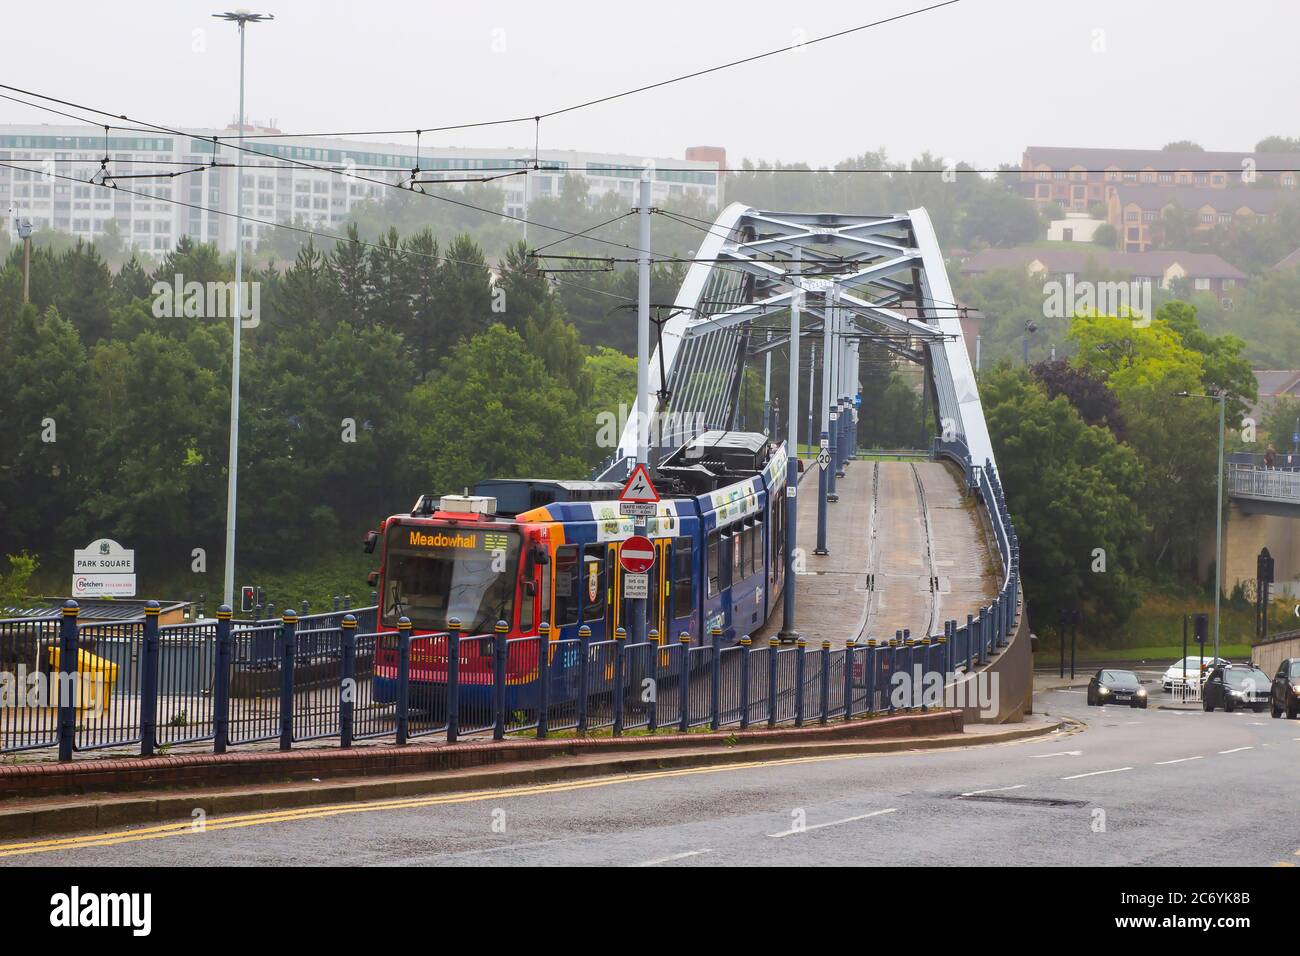 8 juillet 2021 ce tramway Stagecoach Supertram vers l'extérieur traverse le pont Bow String Arch à Park Square à Sheffield, en Angleterre, par une journée humide et brumeuse. C'est le cas Banque D'Images